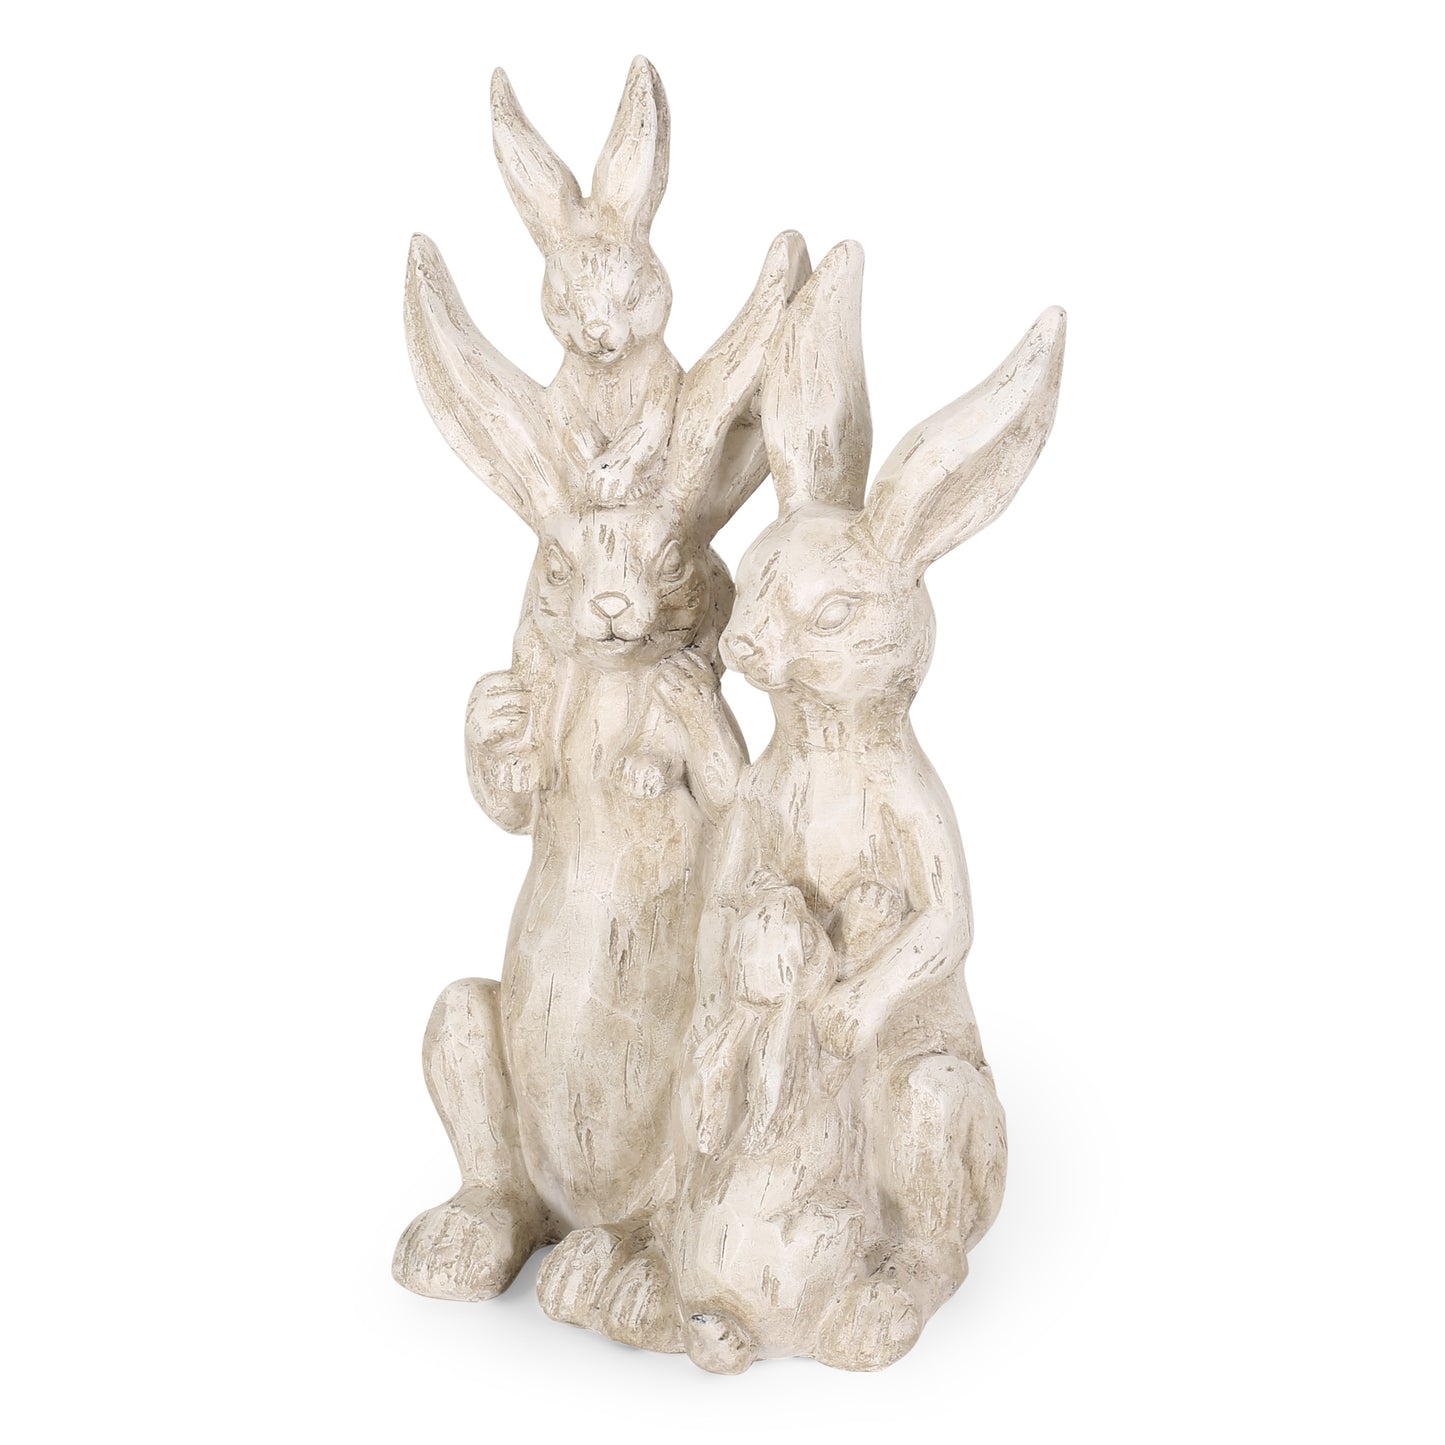 Reser Outdoor Rabbit Family Garden Statue, White